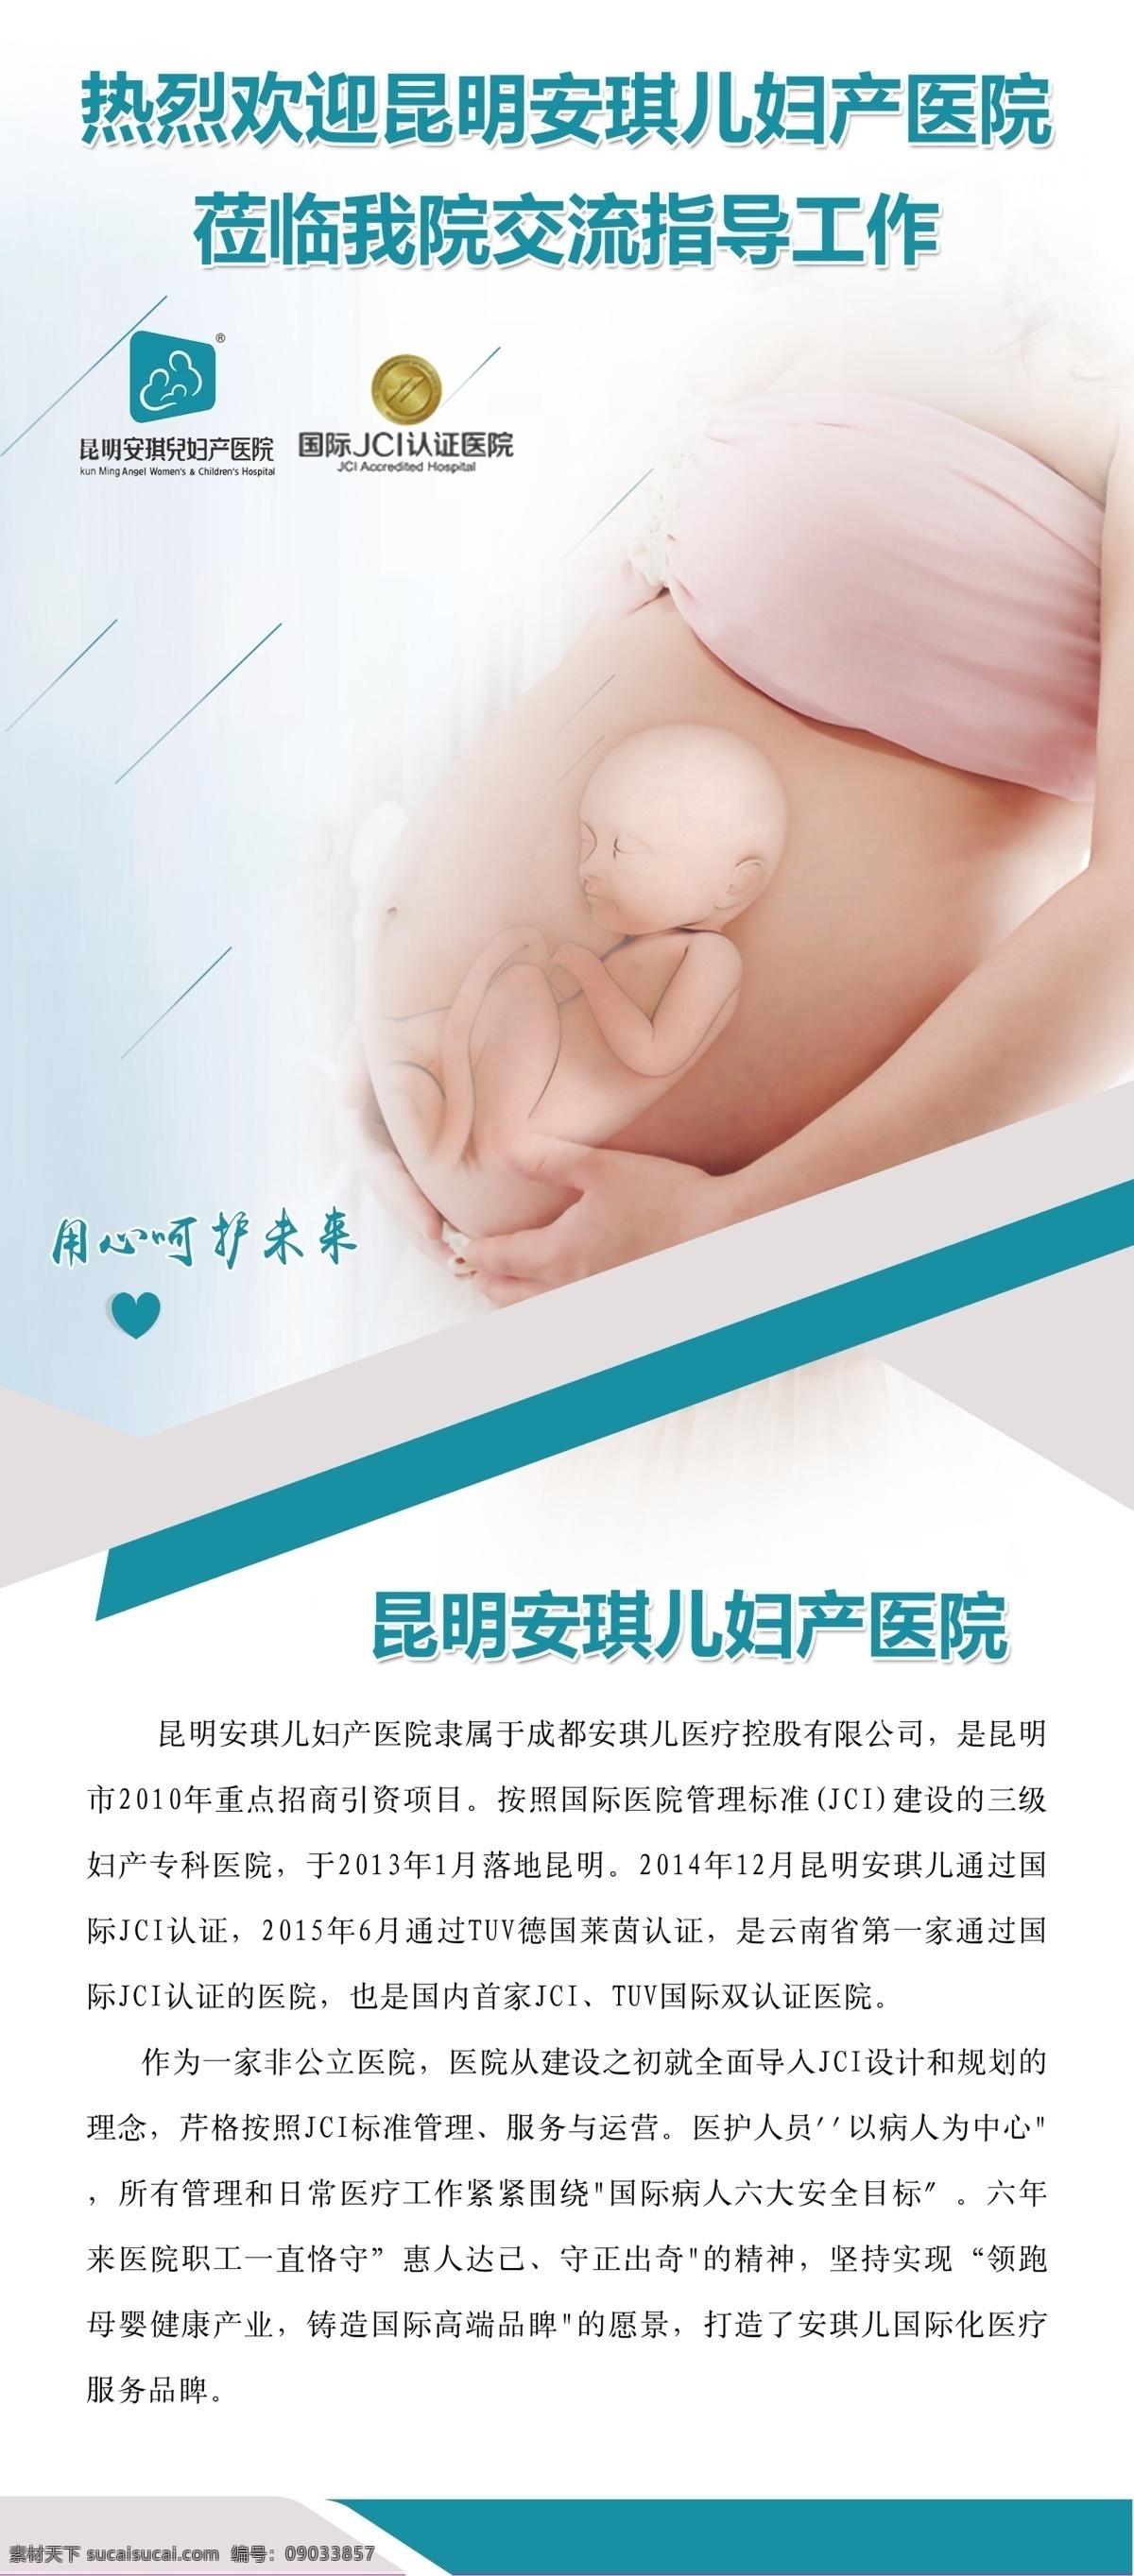 医院展架 孕妇 孕妈妈图片 孕妈妈 母婴 形象展架 医院妇科